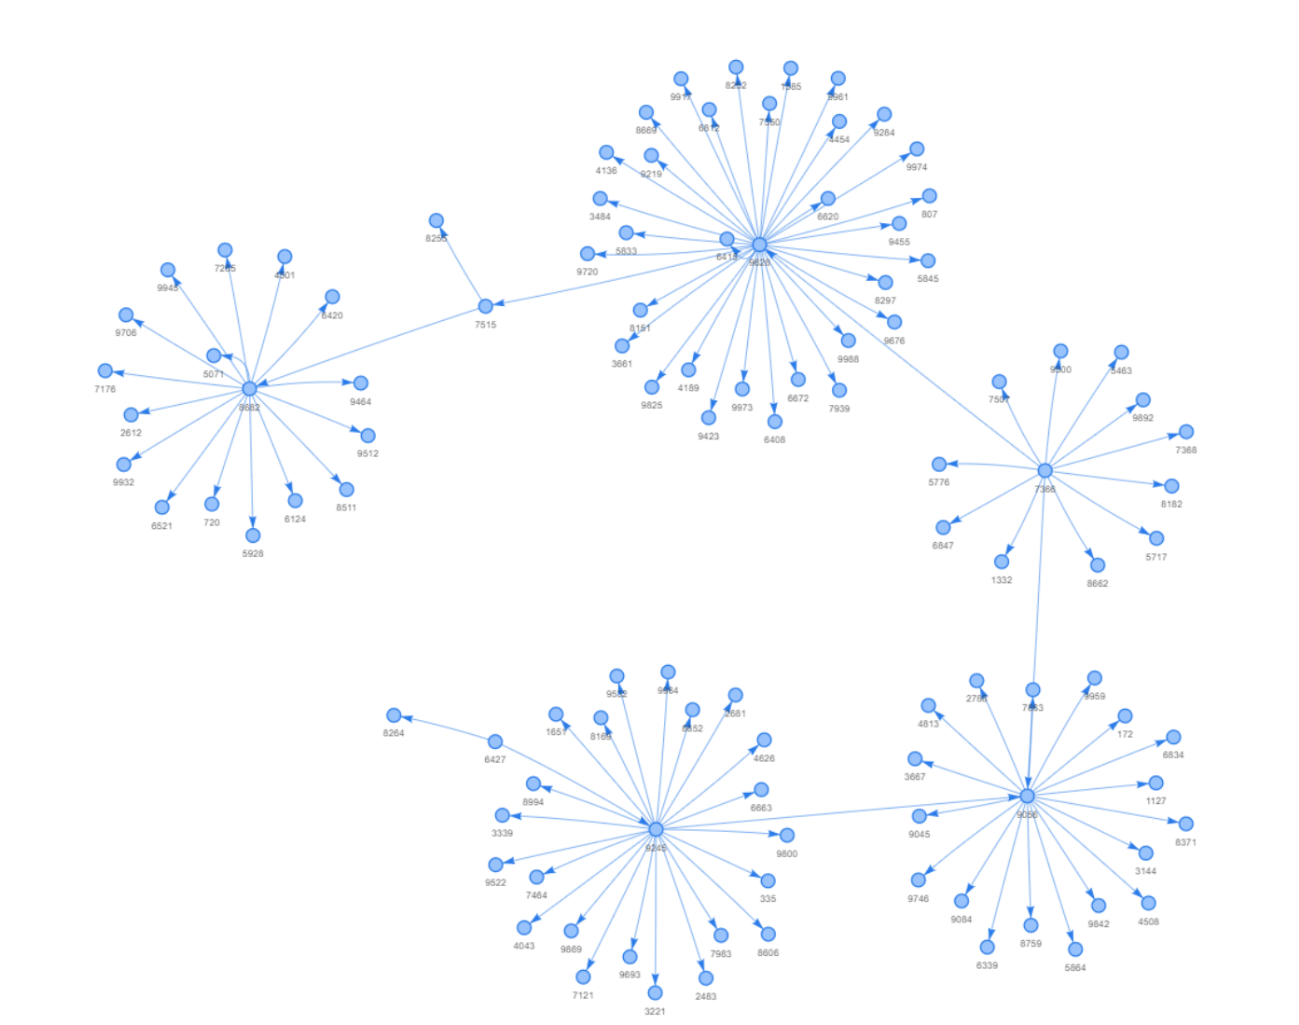 Menggambar Grafik Jaringan dengan NetworkX dan Pyvis (2).png